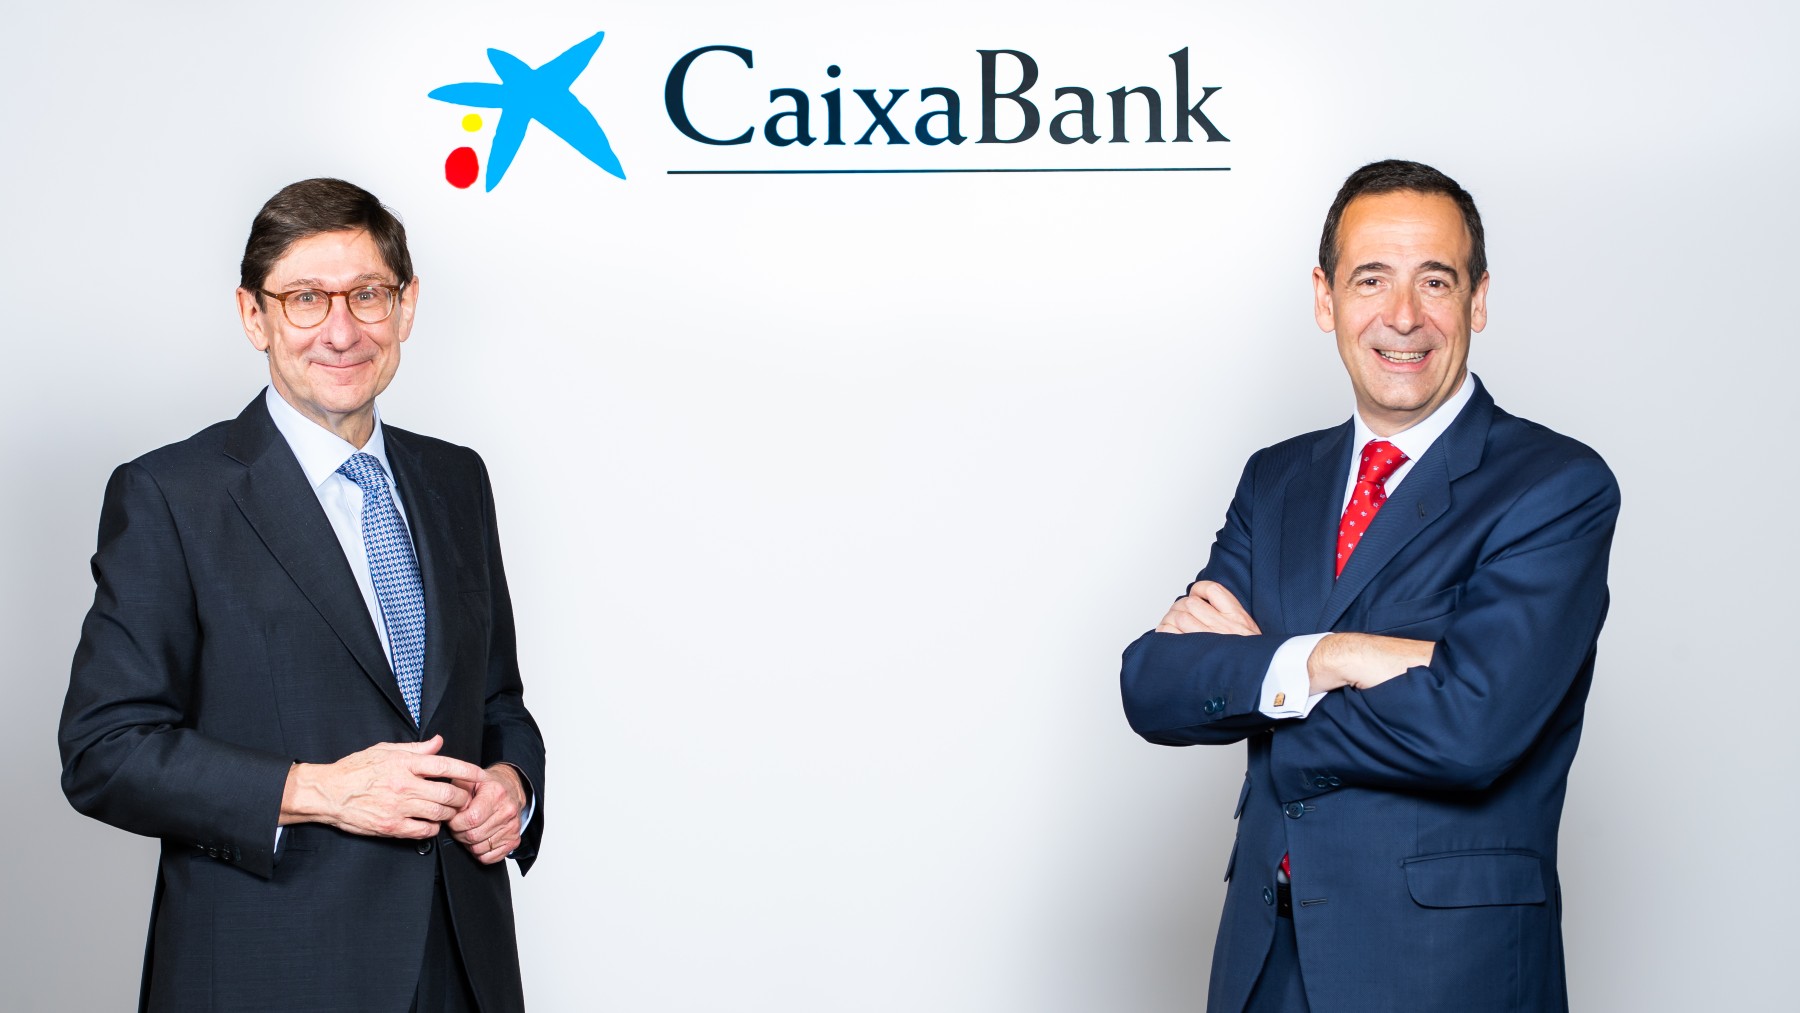 José Ignacio Goirigolzarri y Gonzalo Gortázar, presidente y CEO de CaixaBank.